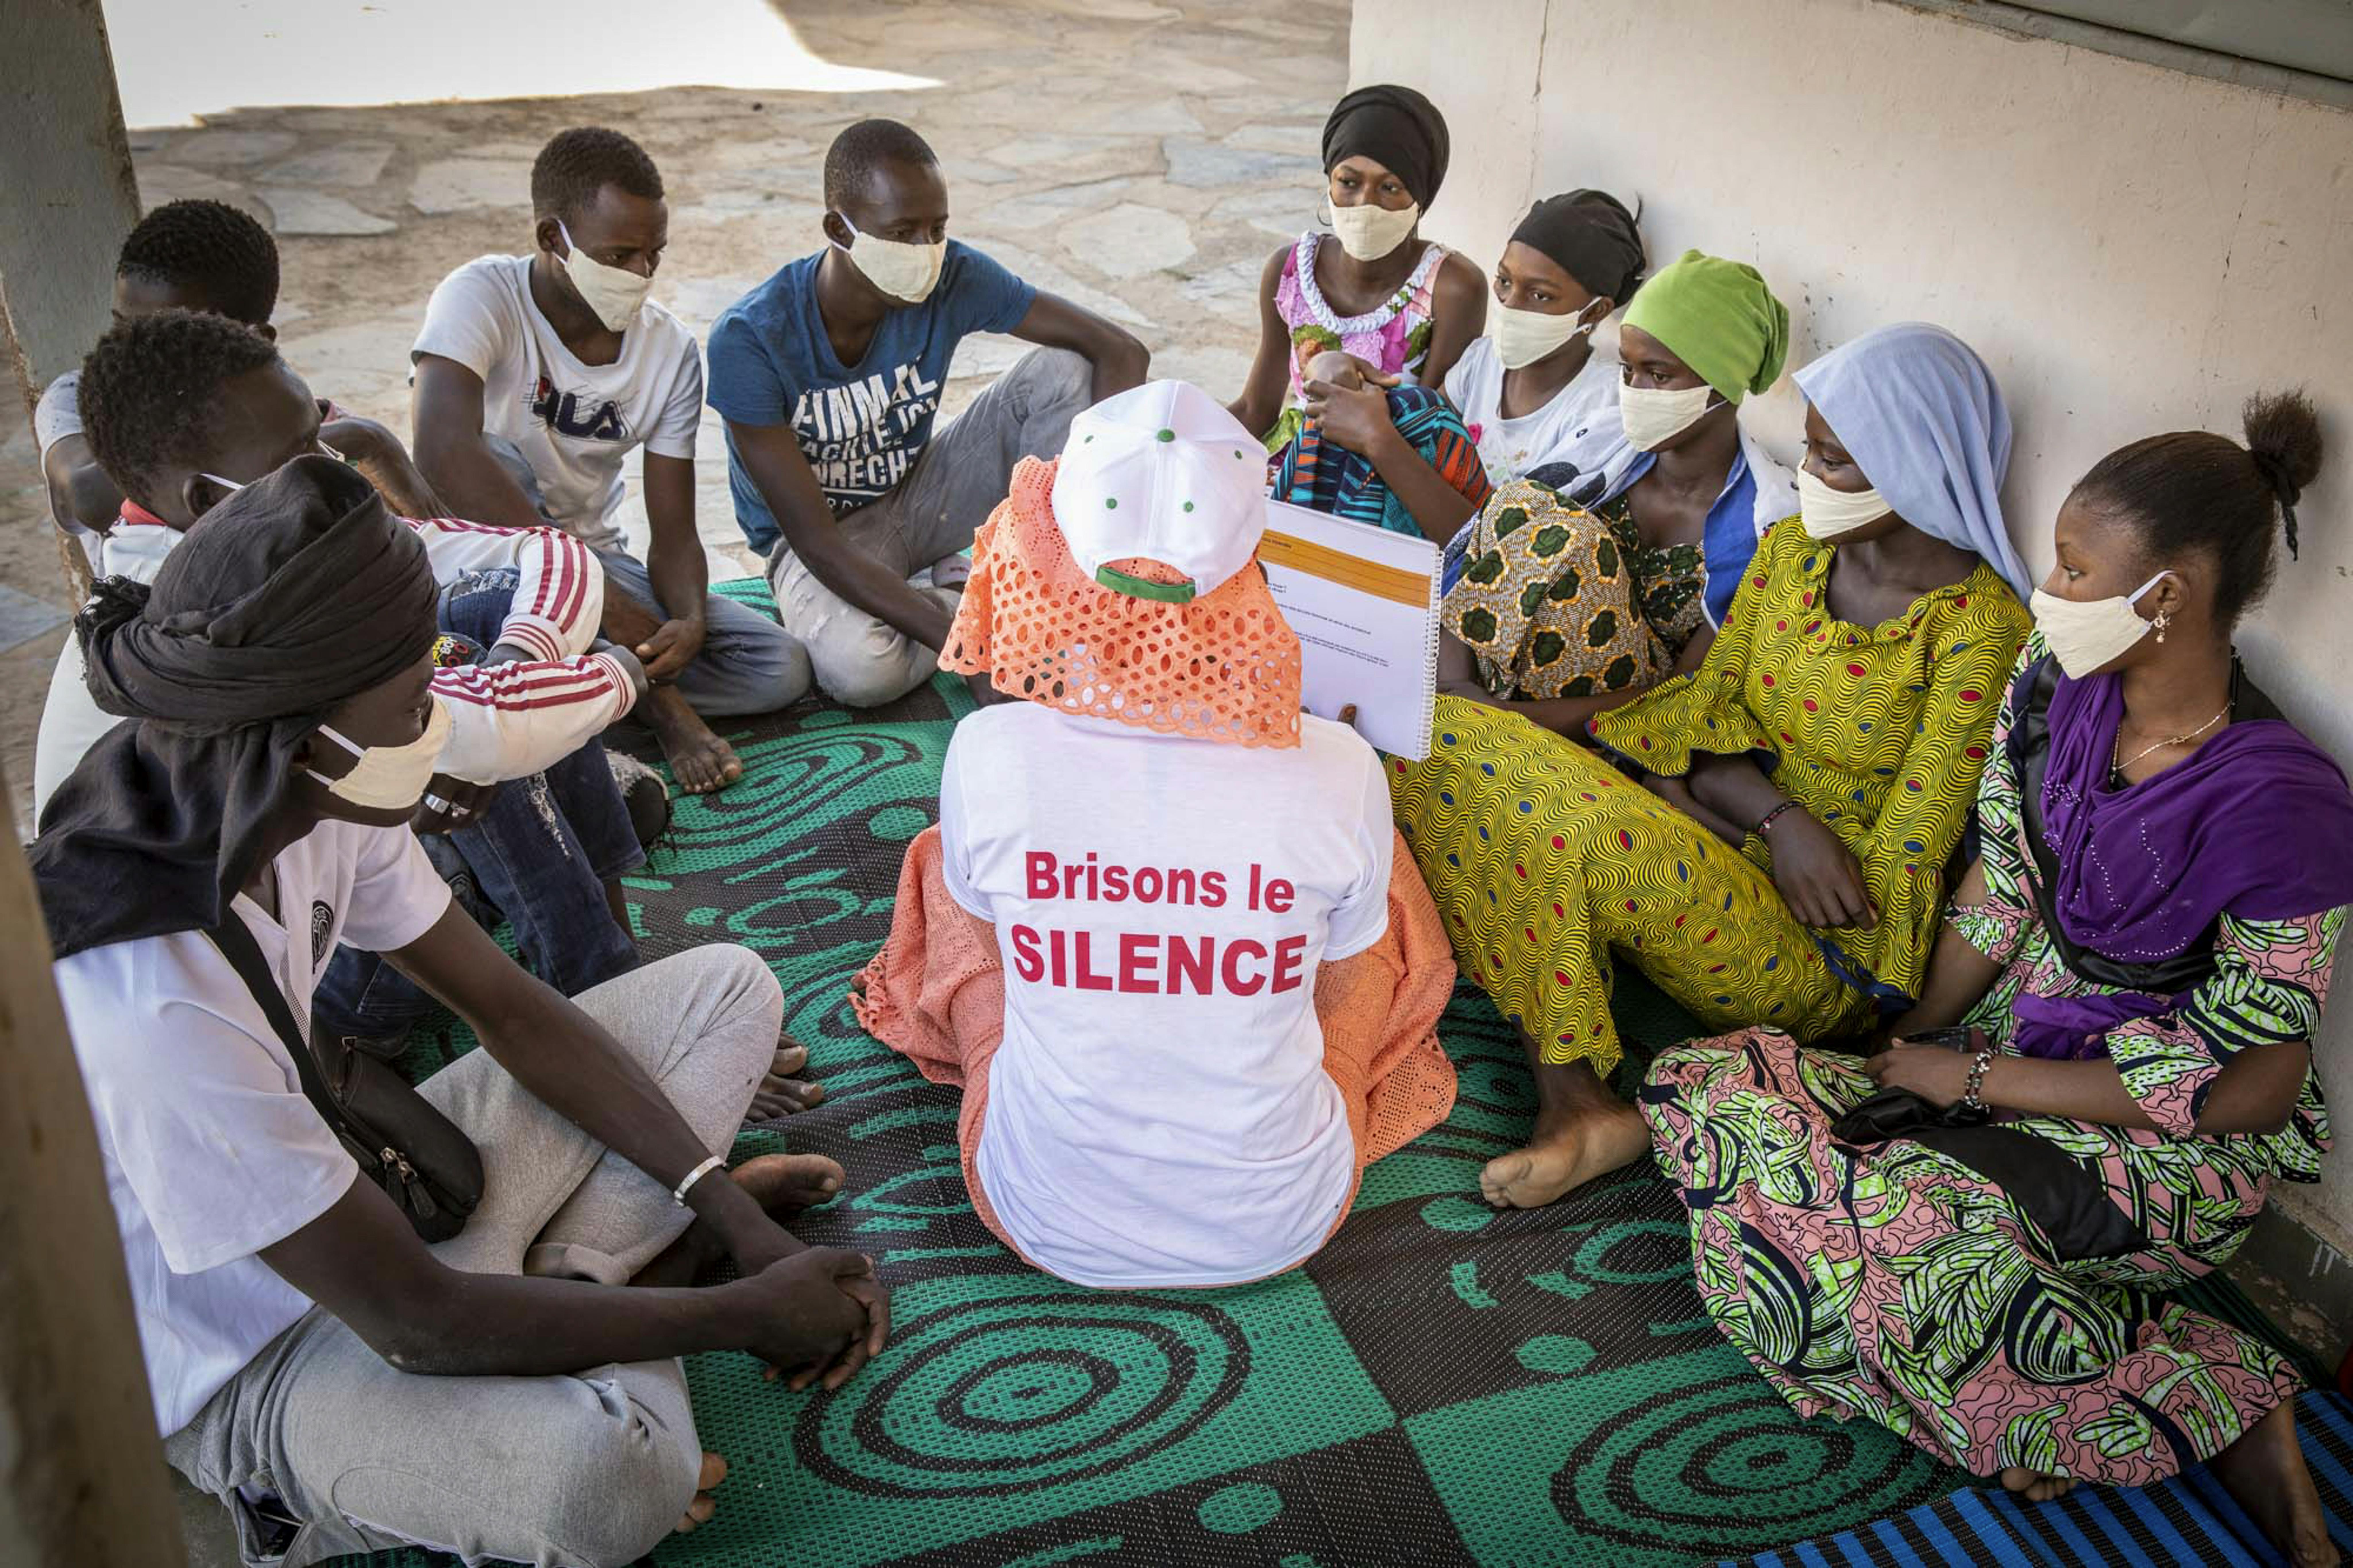 Mali, villaggio di Gadiaba: Kadidia Sow nell'ambito dell'iniziativa Spotlight anima un dibattito con i giovani e le giovani del villaggio per sensibilizzarli contro ogni forma di violenza, compresi i matrimoni precoci, le mutilazioni genitali femminili (MGF) e altre pratiche dannose all'interno della comunità.